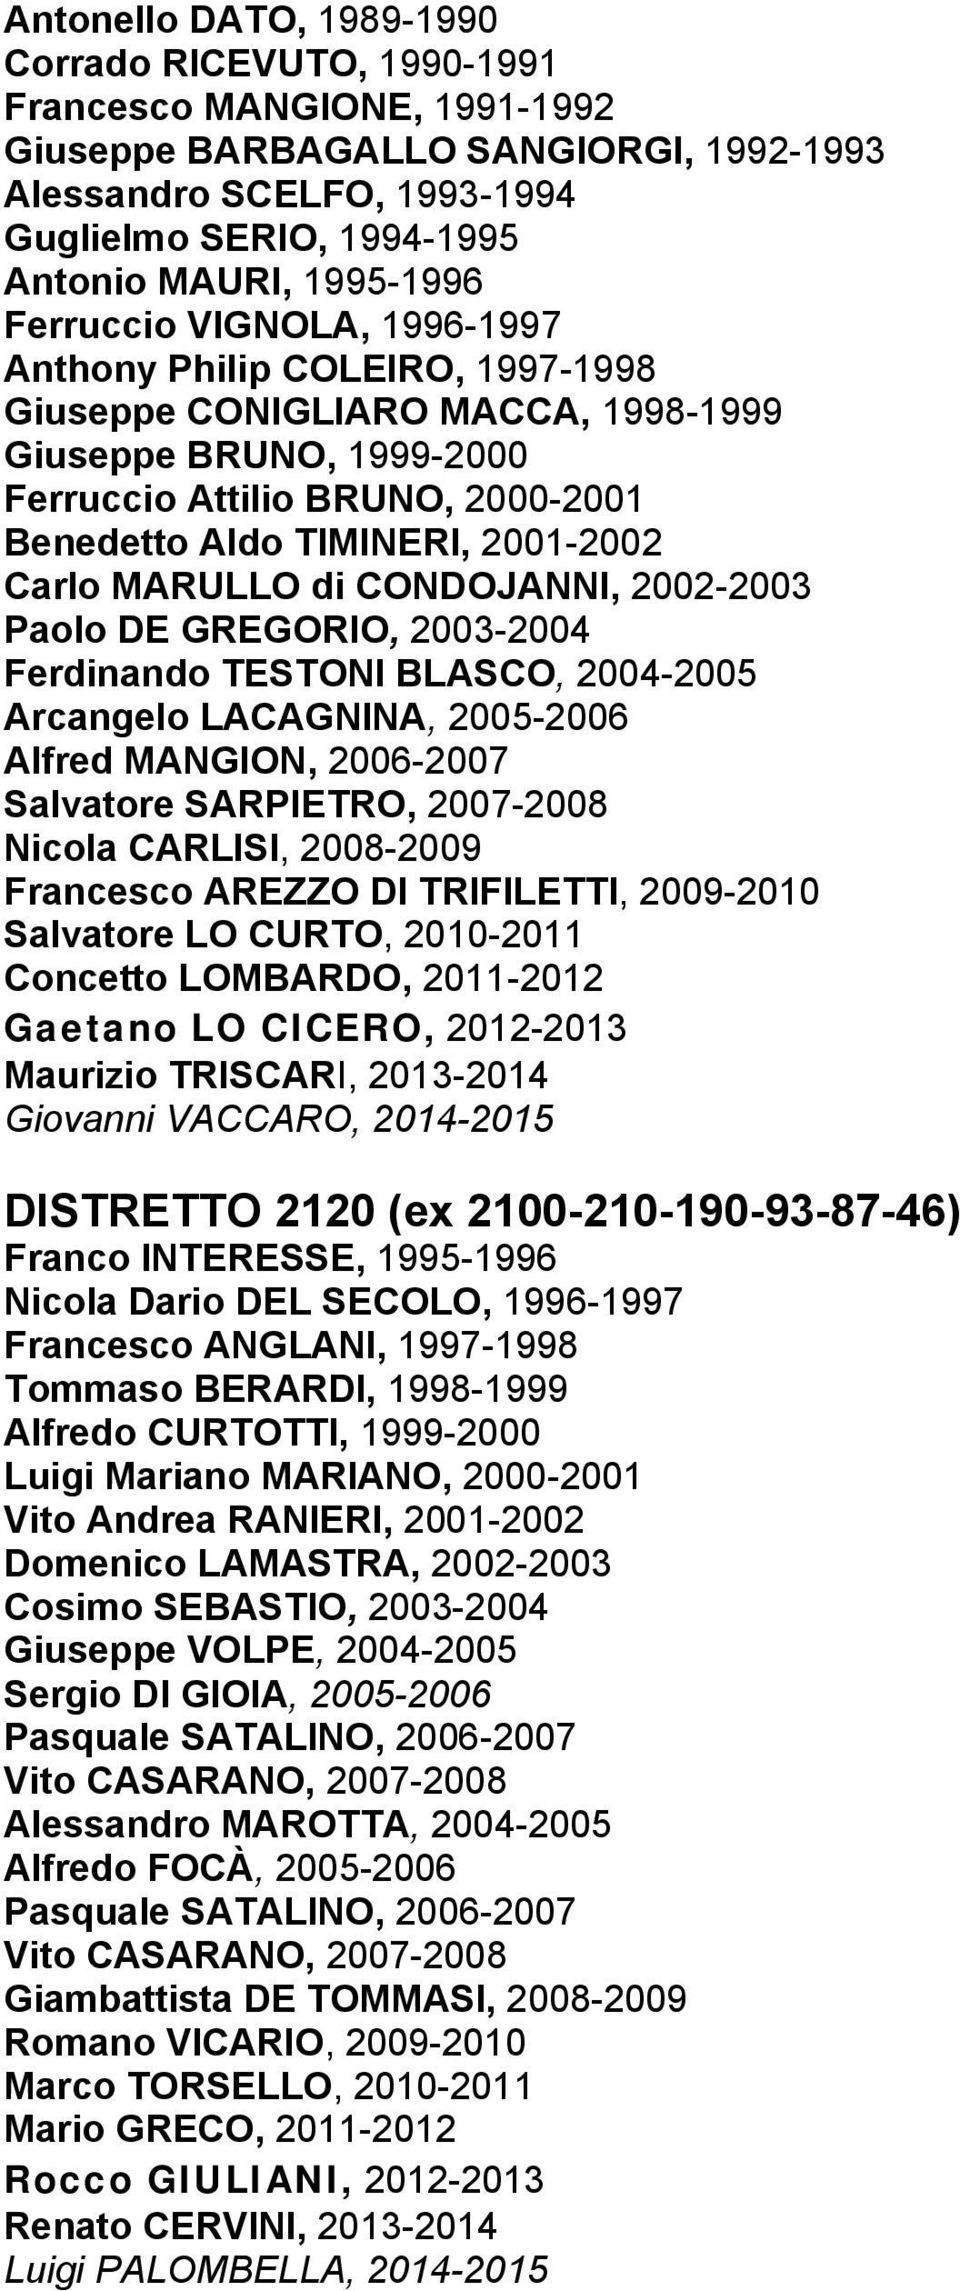 2001-2002 Carlo MARULLO di CONDOJANNI, 2002-2003 Paolo DE GREGORIO, 2003-2004 Ferdinando TESTONI BLASCO, 2004-2005 Arcangelo LACAGNINA, 2005-2006 Alfred MANGION, 2006-2007 Salvatore SARPIETRO,